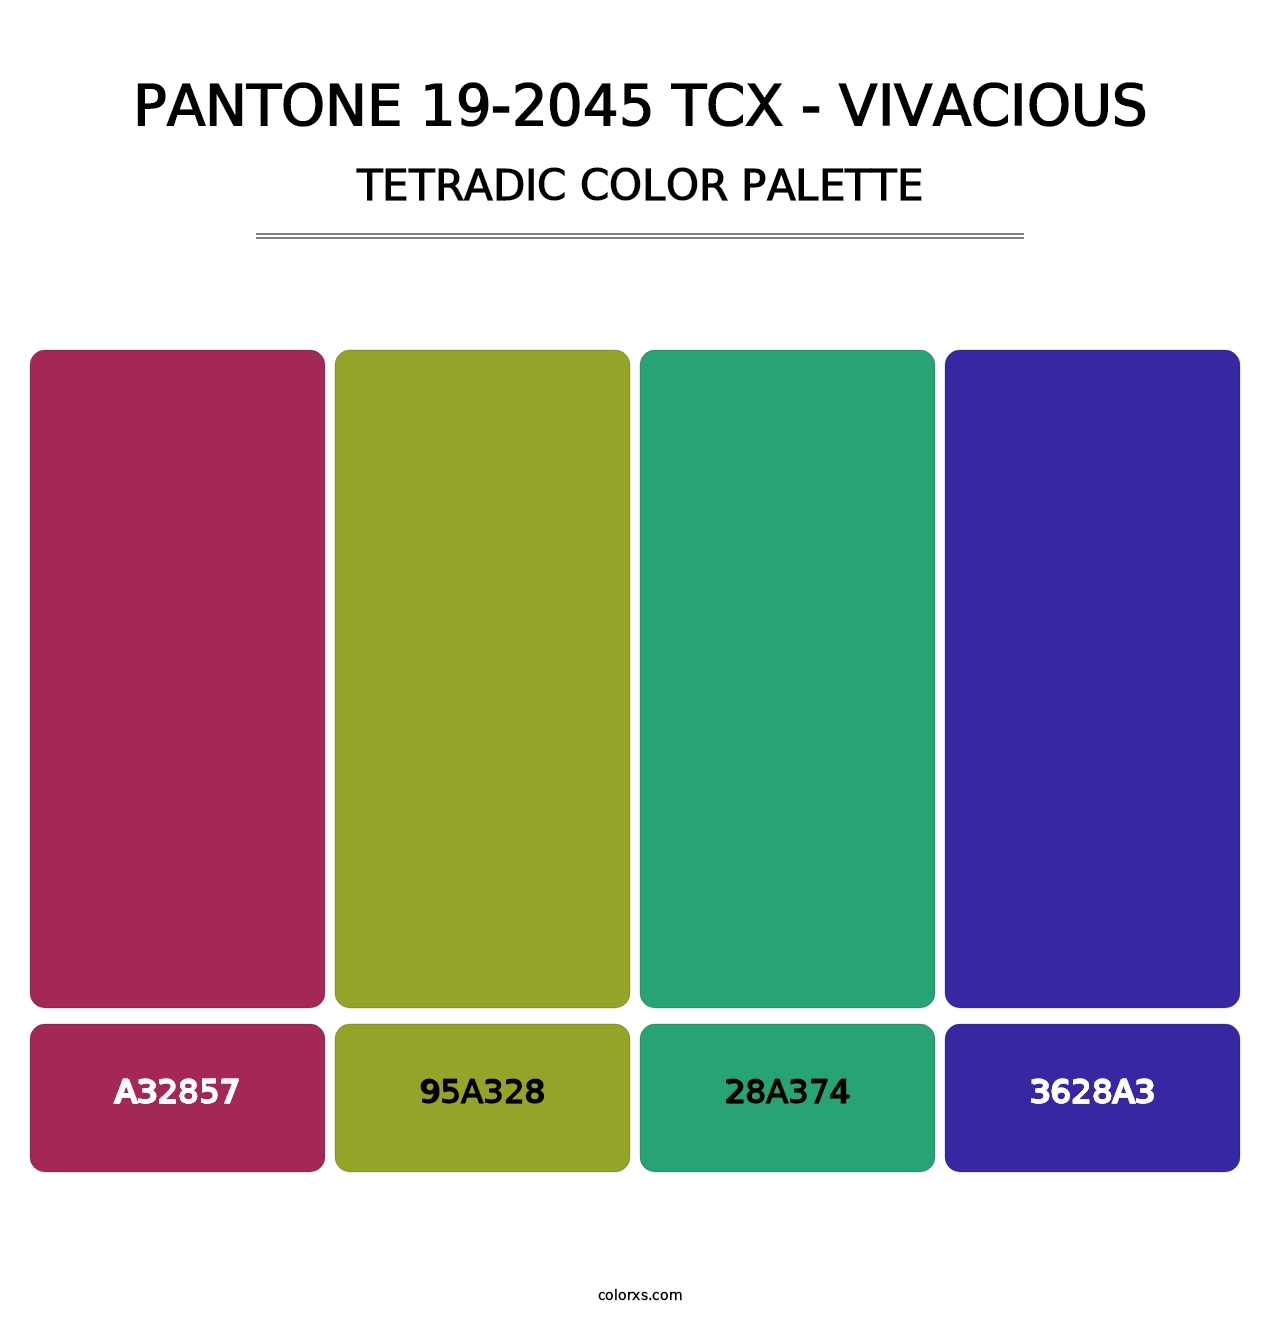 PANTONE 19-2045 TCX - Vivacious - Tetradic Color Palette